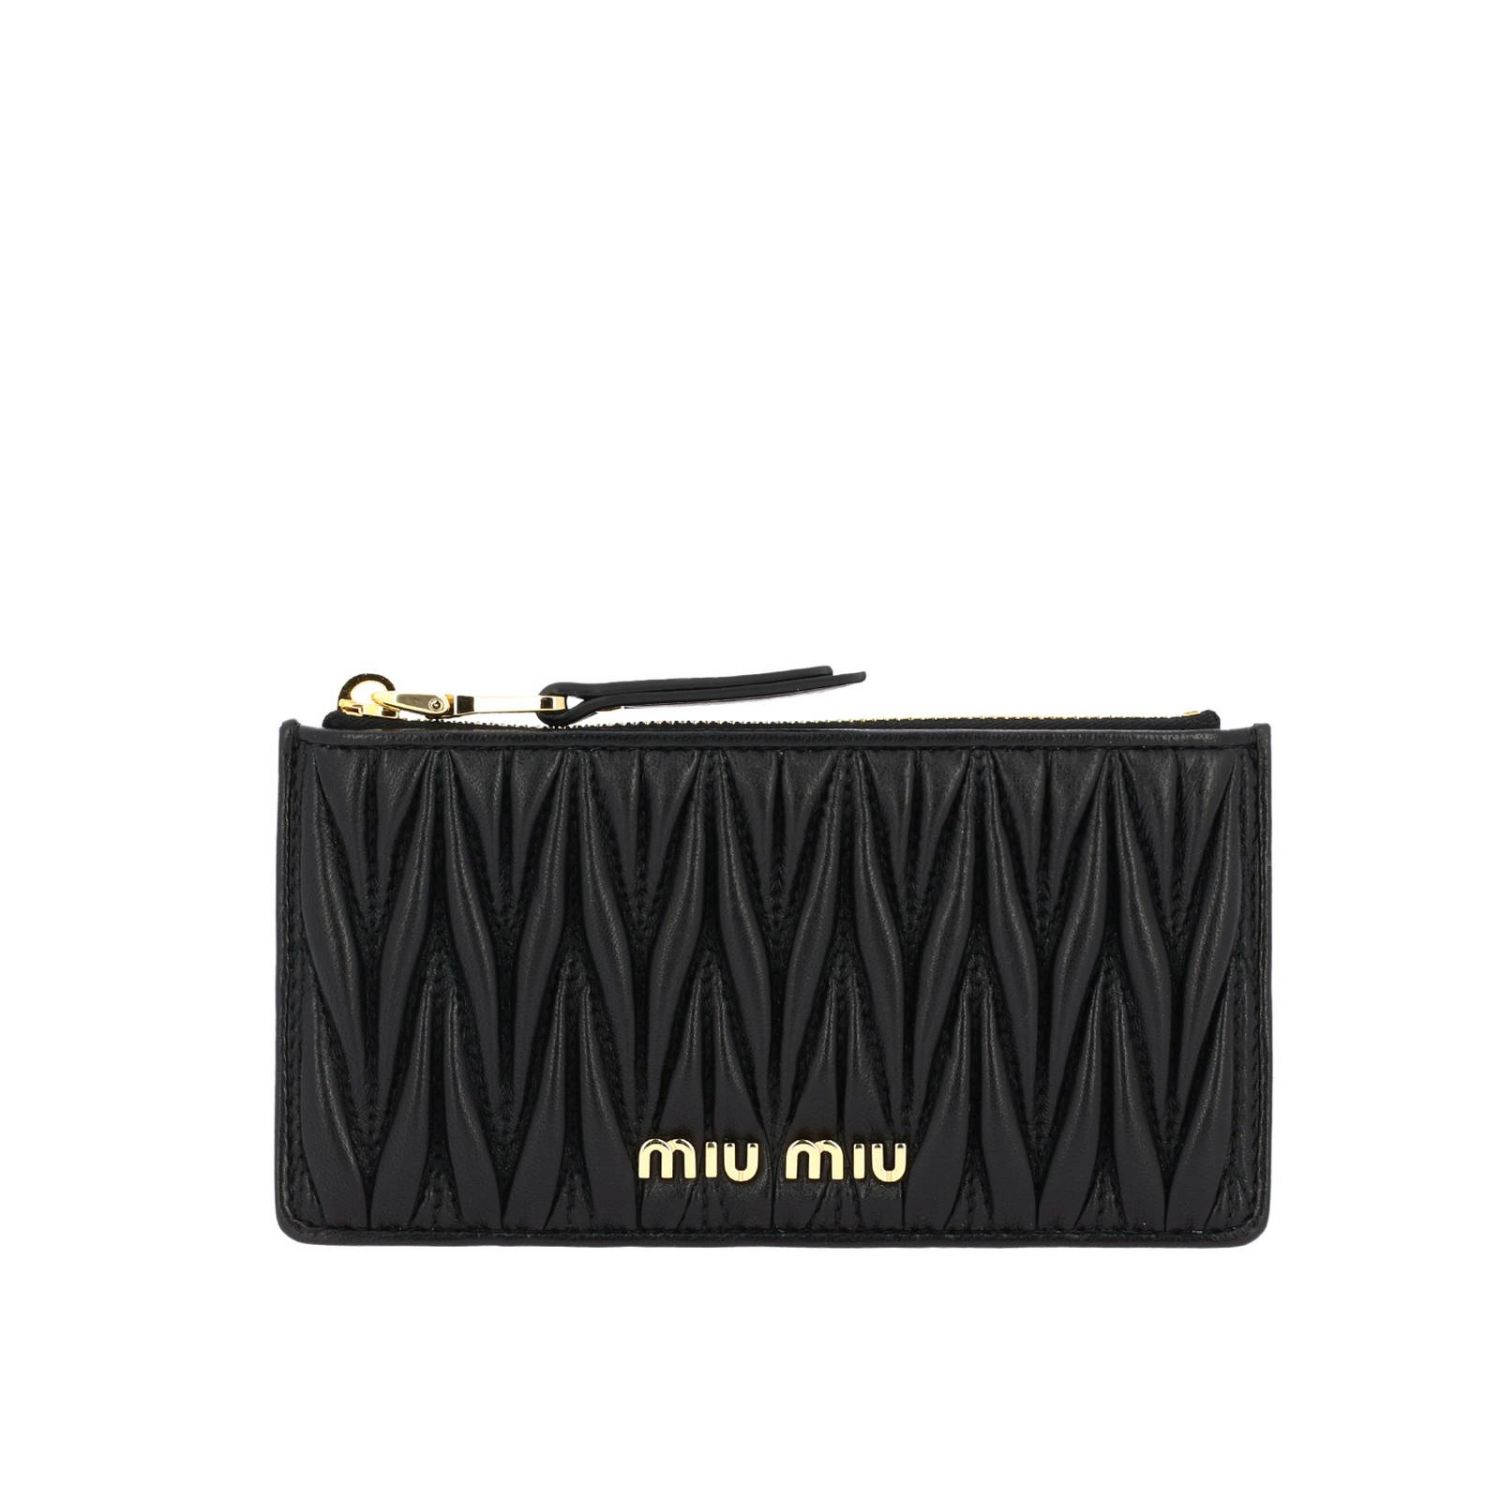 MIU MIU: Credit card holder in genuine soft matelassé leather with logo